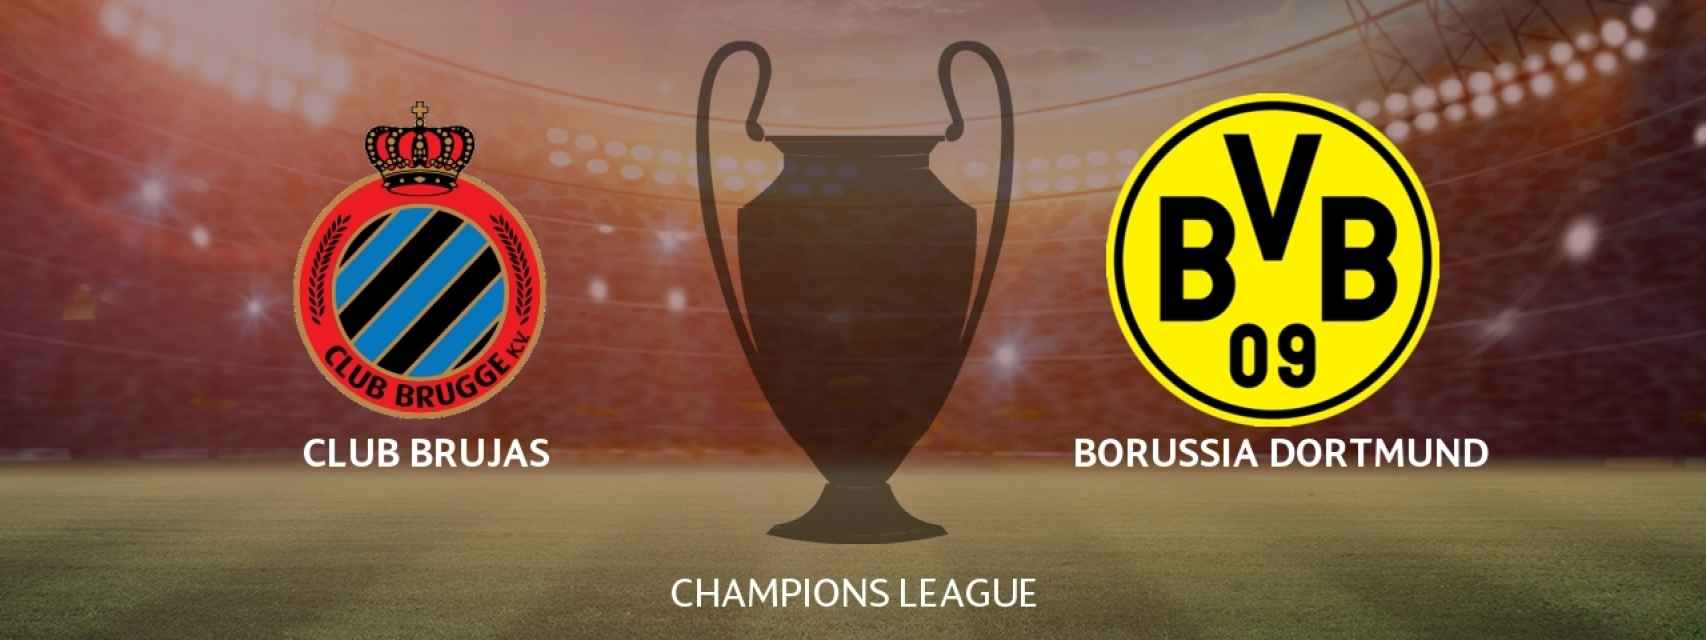 Brujas - Borussia Dortmund, siga en directo el partido de Champions League